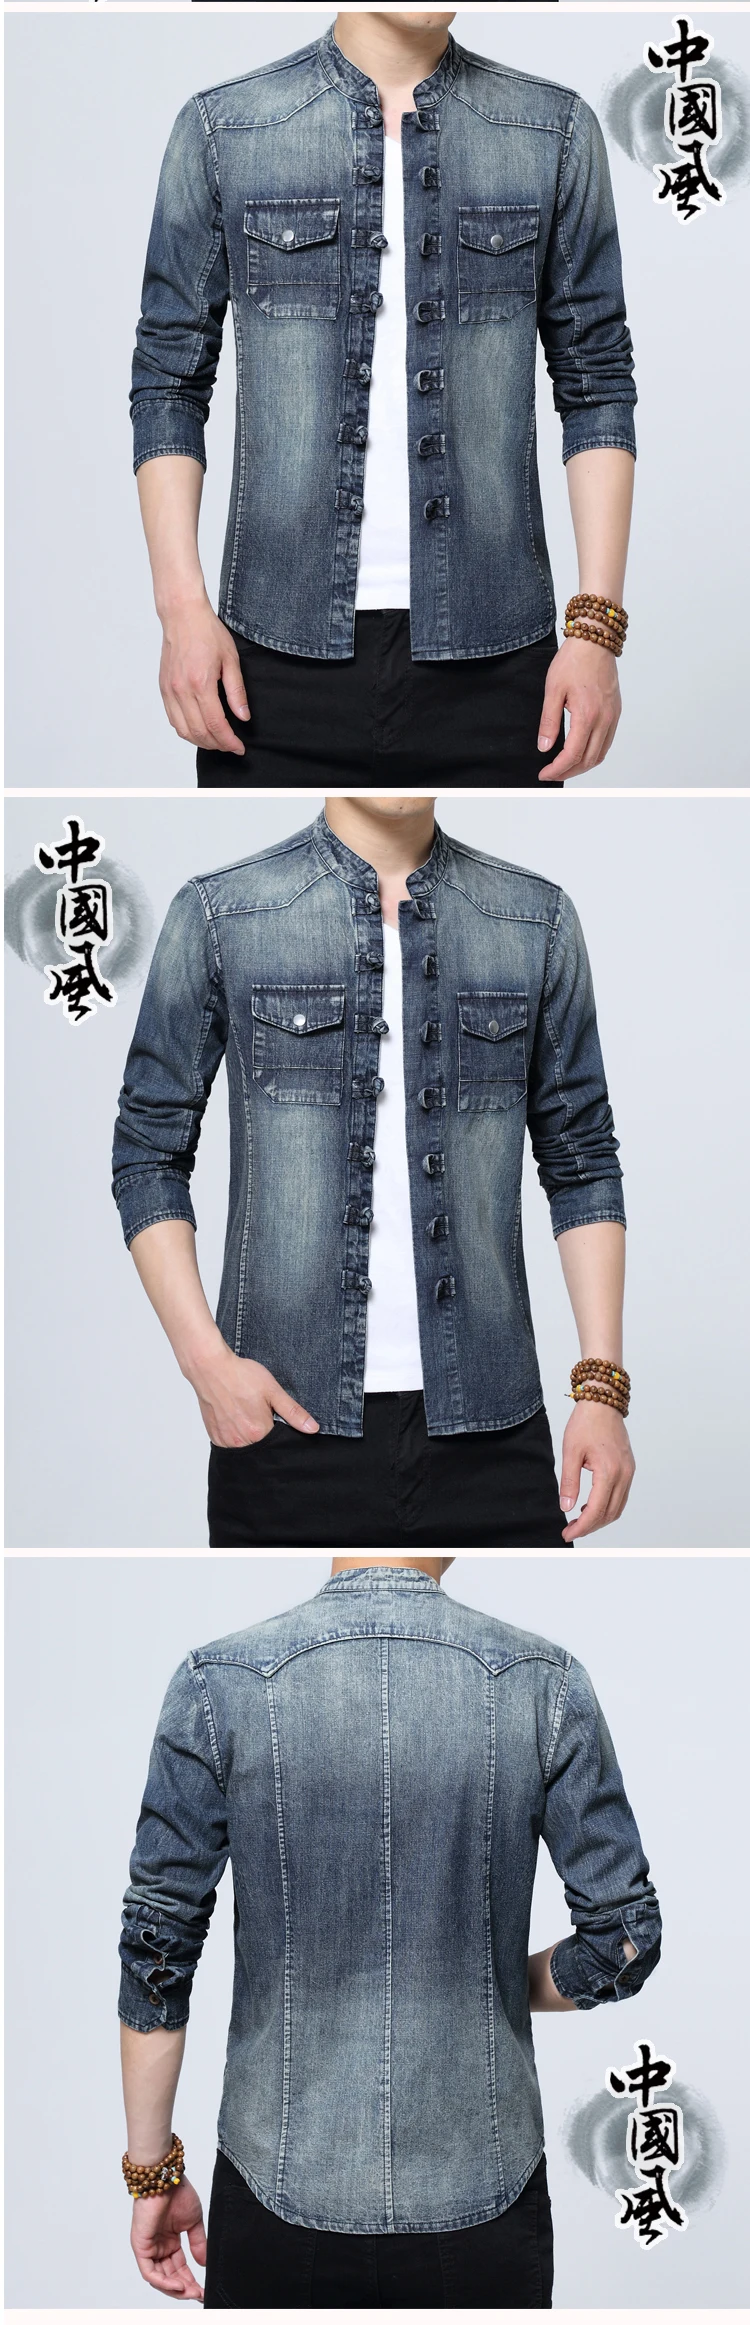 2019 китайский стиль Мужская одежда кнопку Пряжка Тан костюм Мужская молодежи с длинными рукавами джинсовая рубашка Весна Повседневная